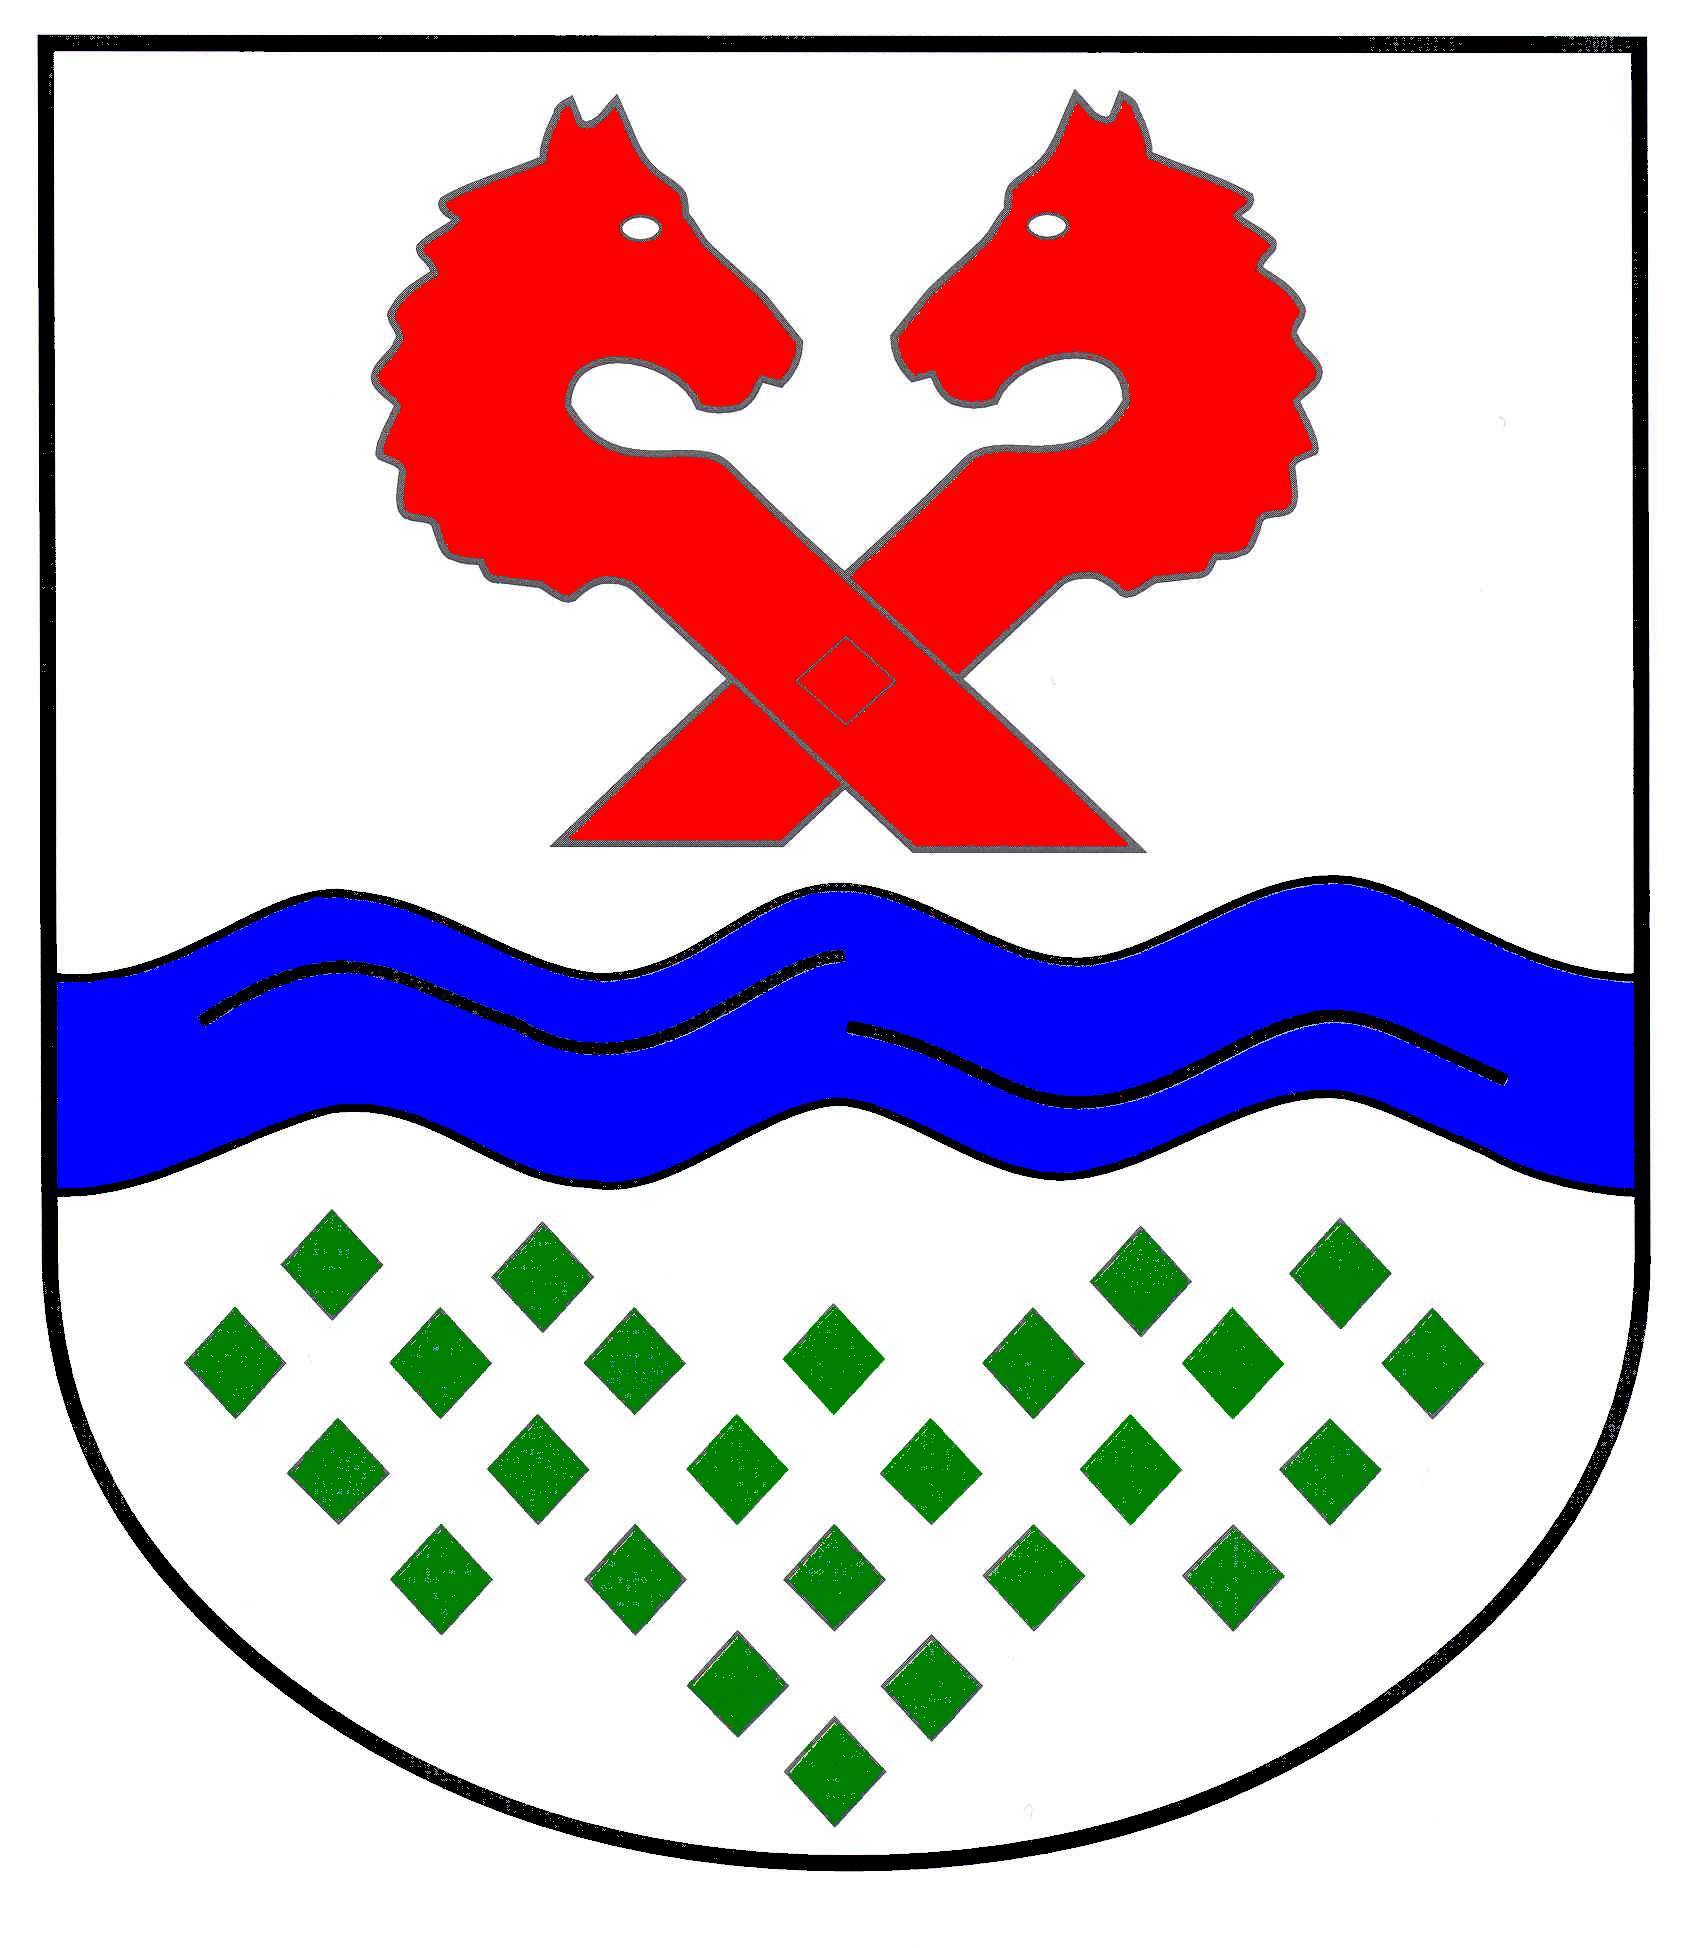 Wappen Amt Sandesneben-Nusse, Kreis Herzogtum Lauenburg